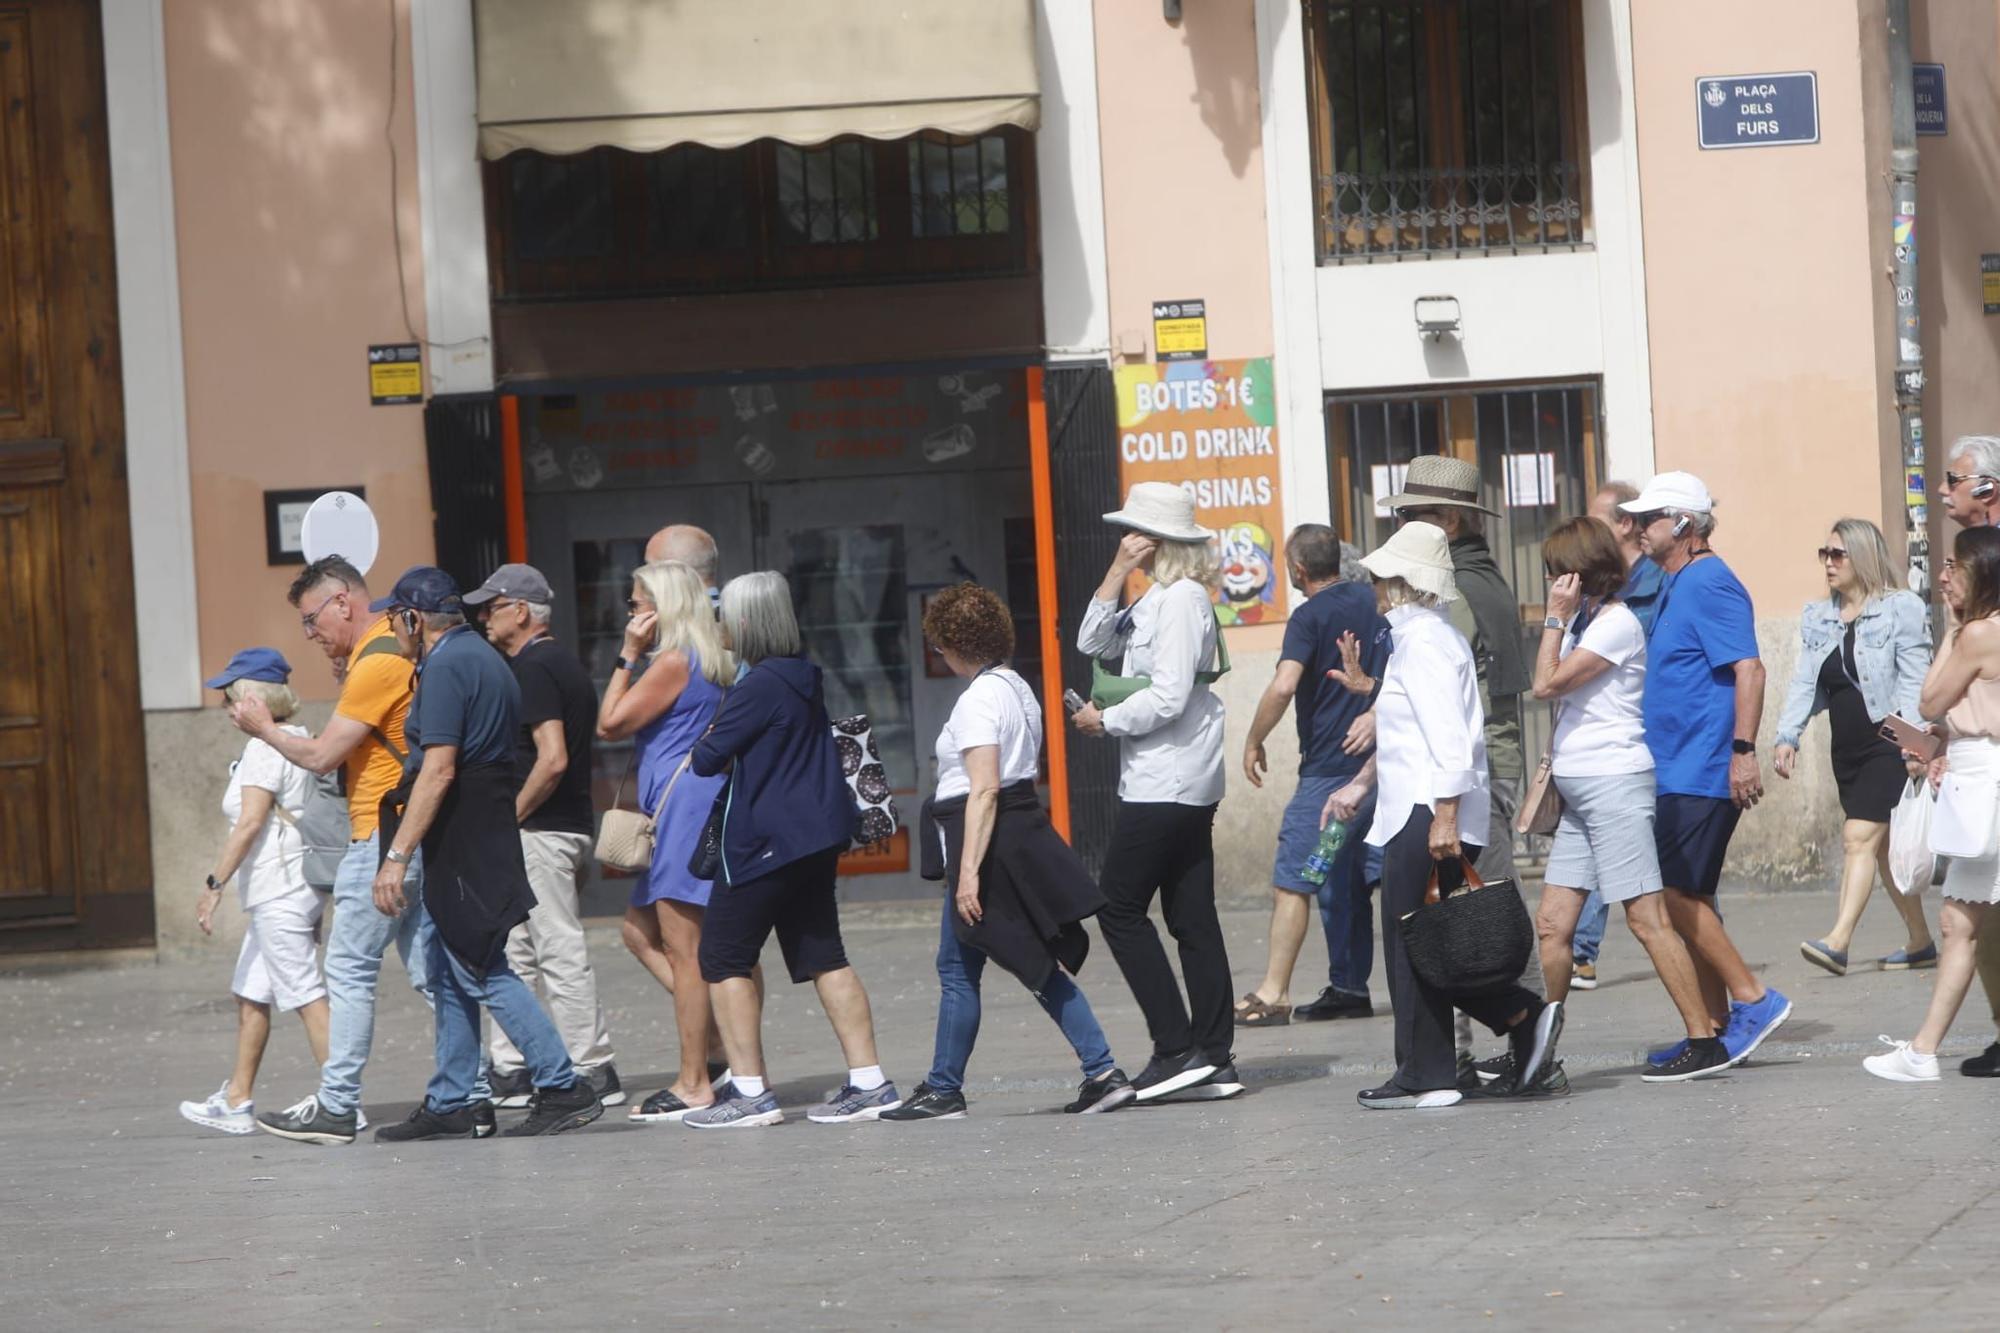 València a rebosar de gente en el fin de semana previo al puente del 1 de mayo